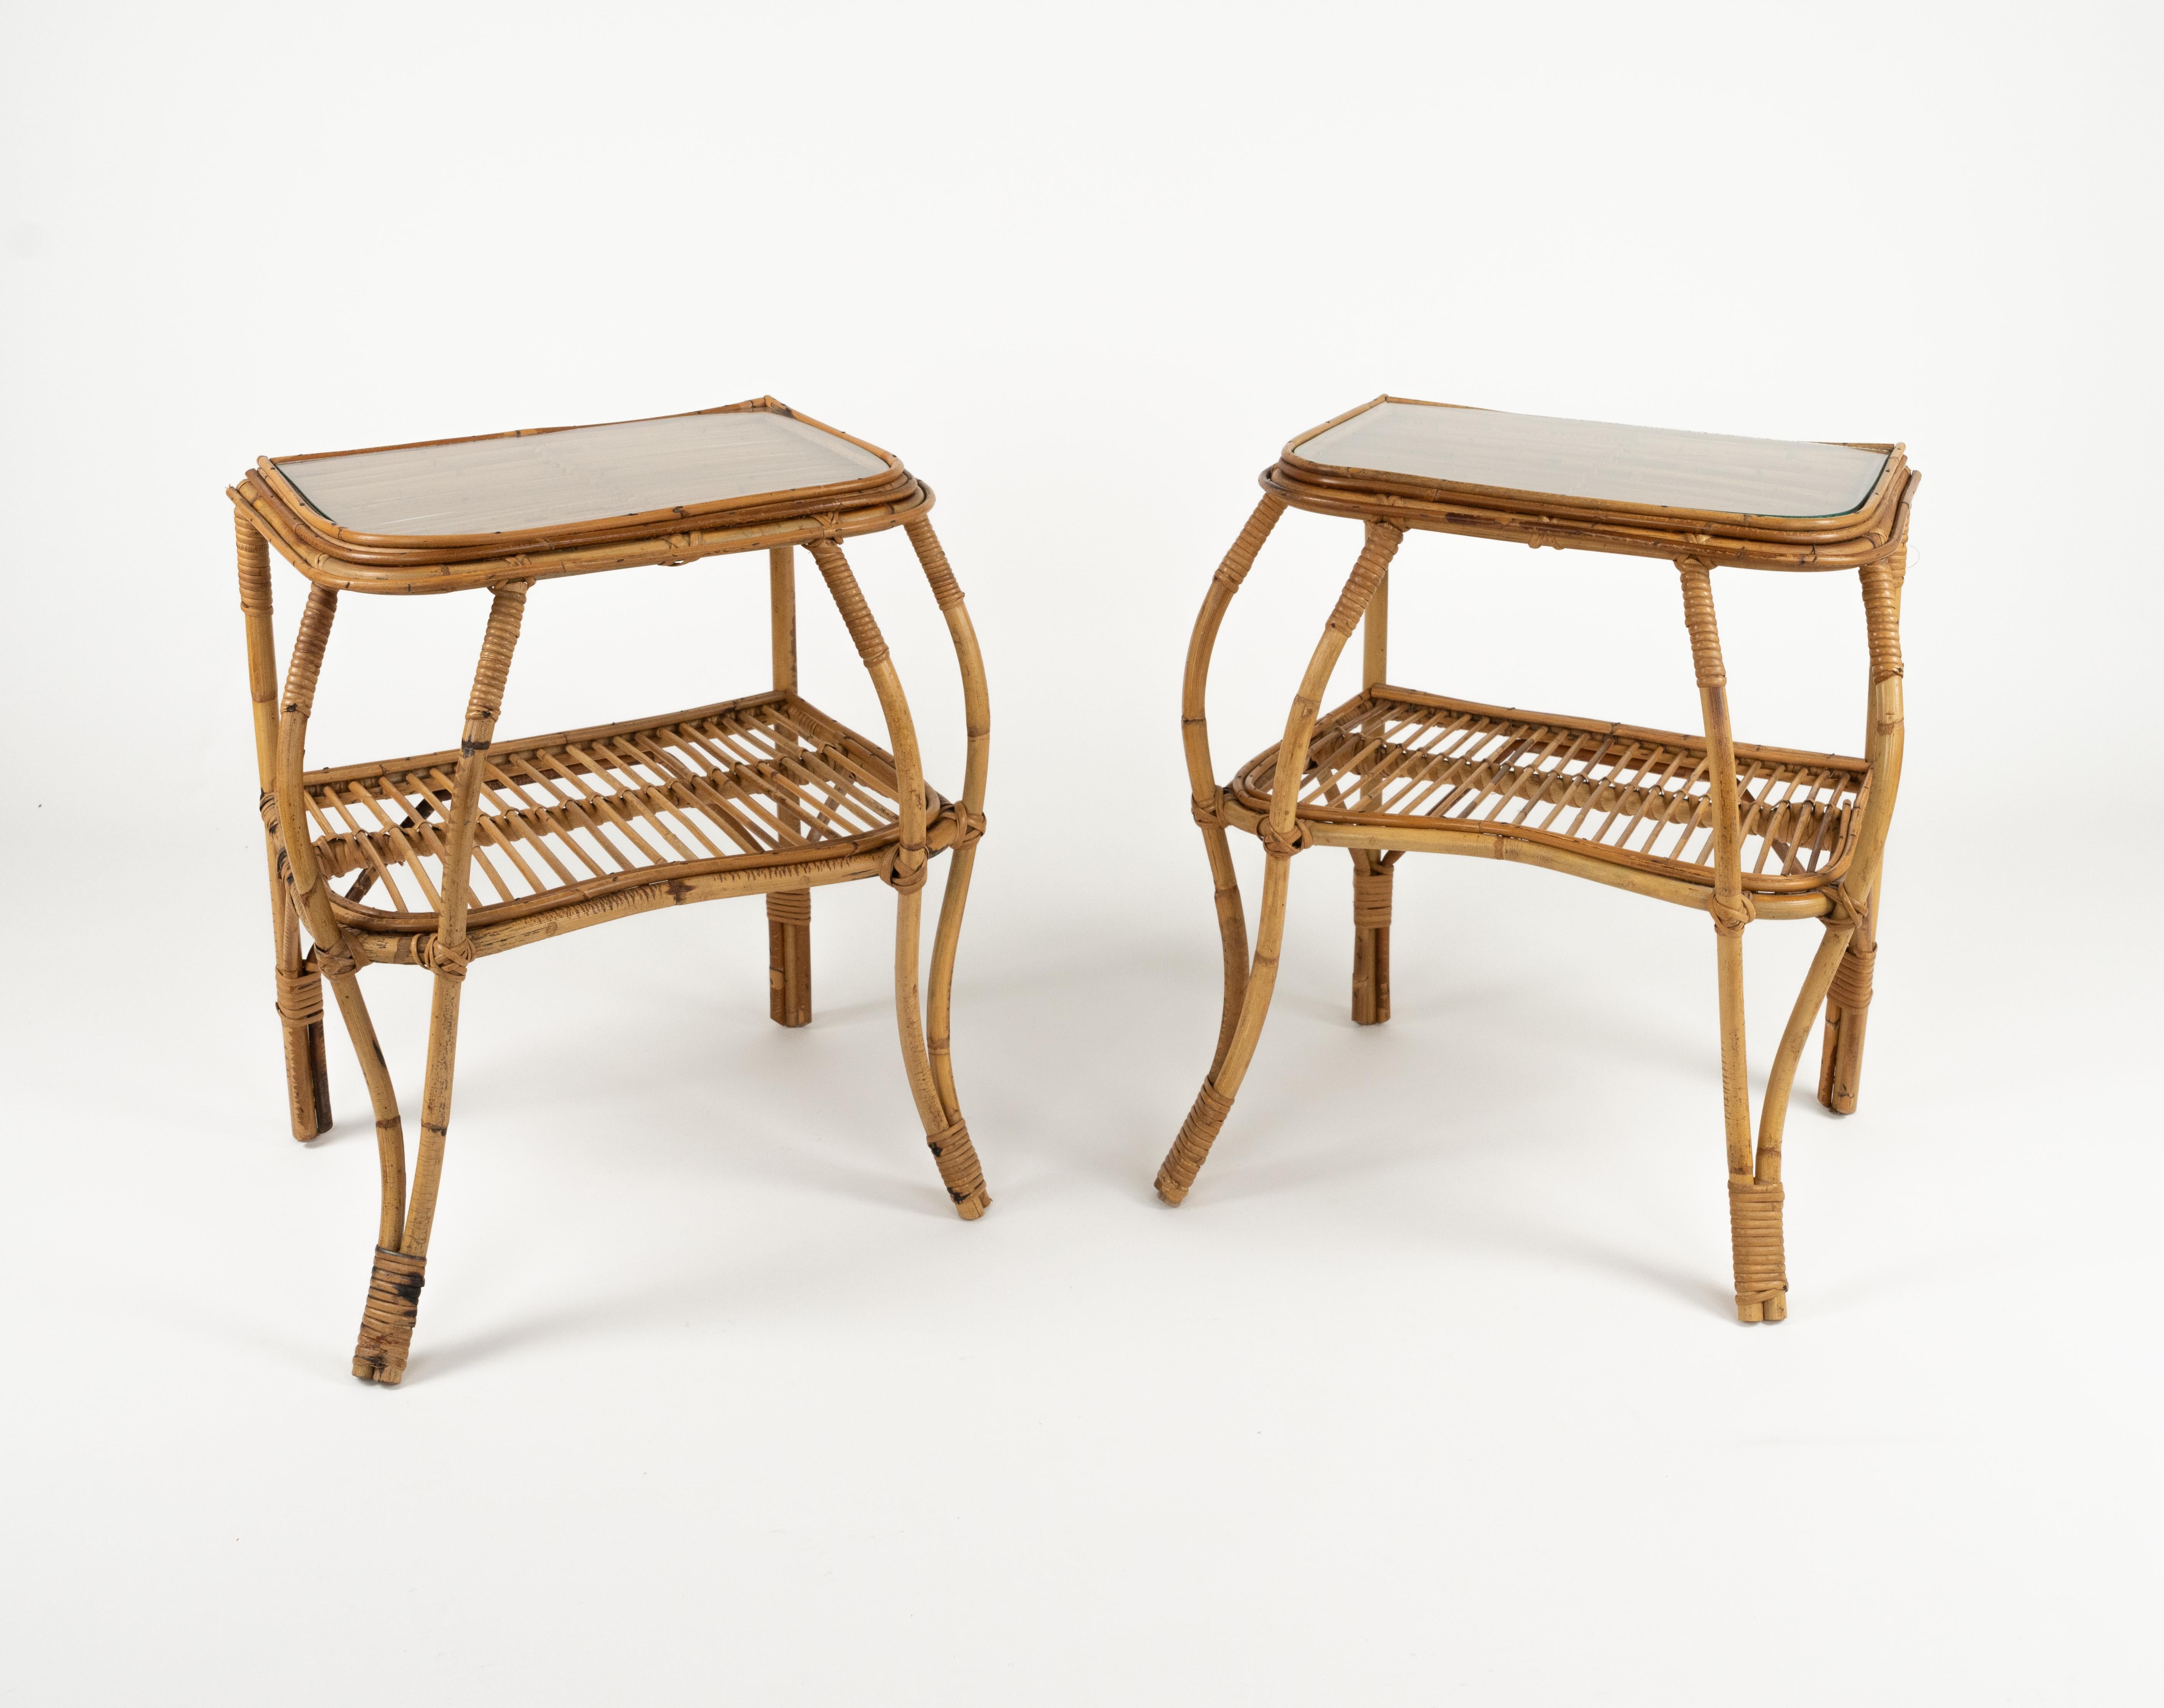 Paire de tables de chevet en bambou, rotin et verre.

Fabriqué en Italie dans les années 1960.

La forme sinueuse des pieds apporte de l'ampleur tout en conservant sa légèreté.